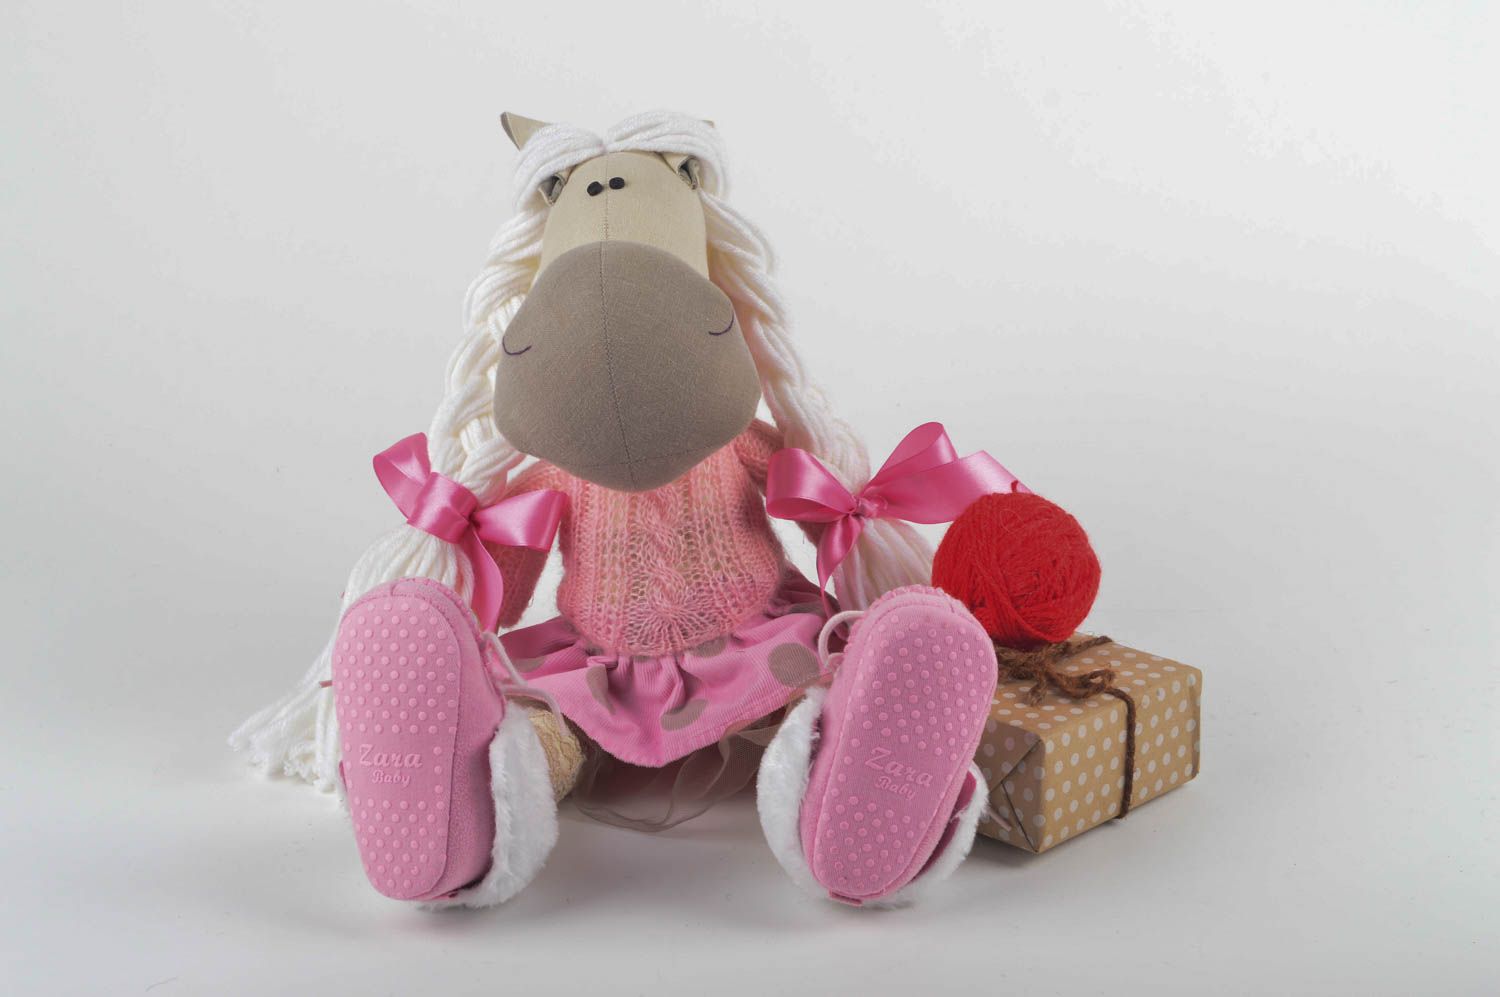 Игрушка лошадка хэнд мэйд детская игрушка из льна мягкая игрушка интересная фото 5